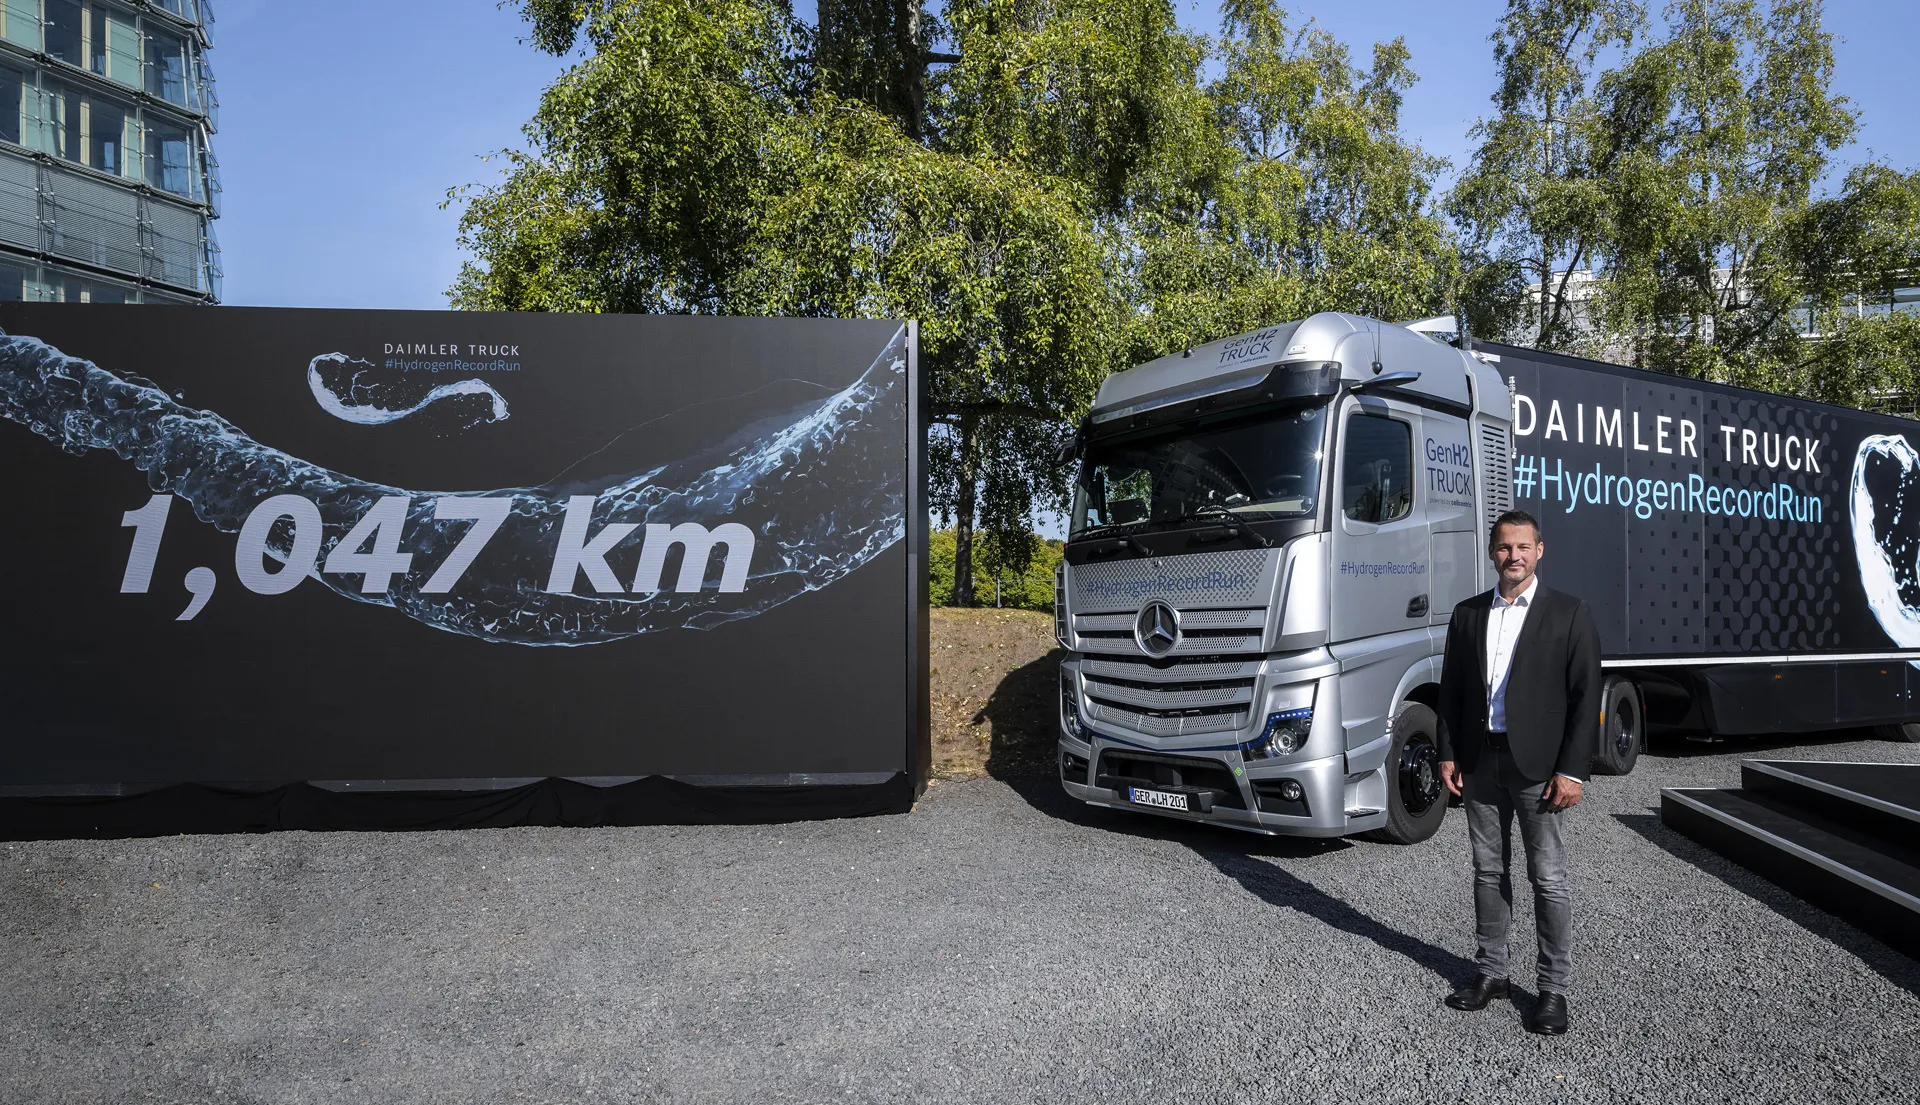 Nguyên mẫu xe tải GenH2 của Daimler Truck di chuyển 650 dặm chỉ với một lần đổ đầy hydro